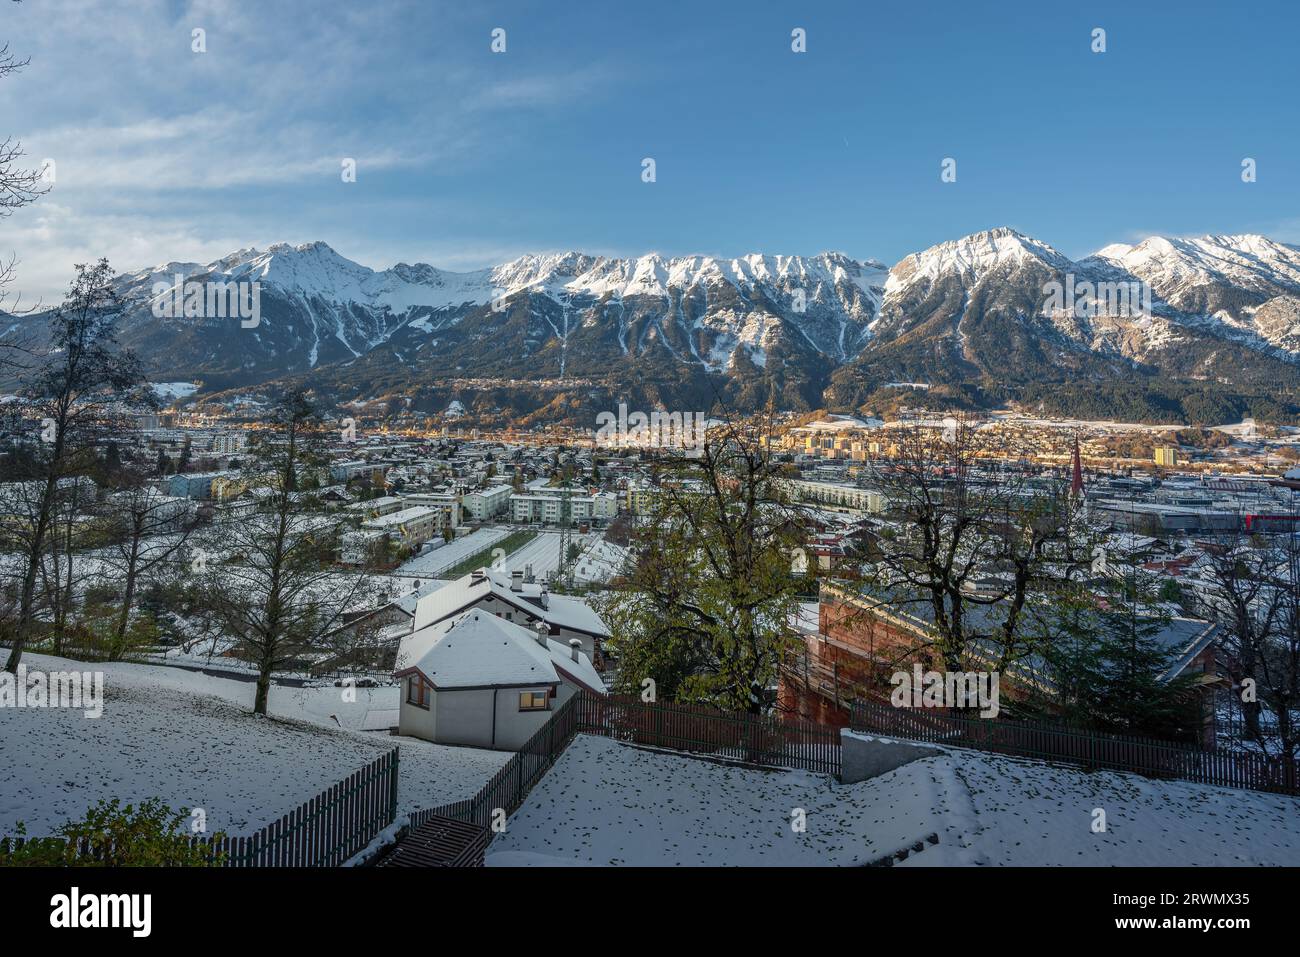 Vue sur Innsbruck avec neige et les montagnes des Alpes de Karwendel - Innsbruck, Autriche Banque D'Images